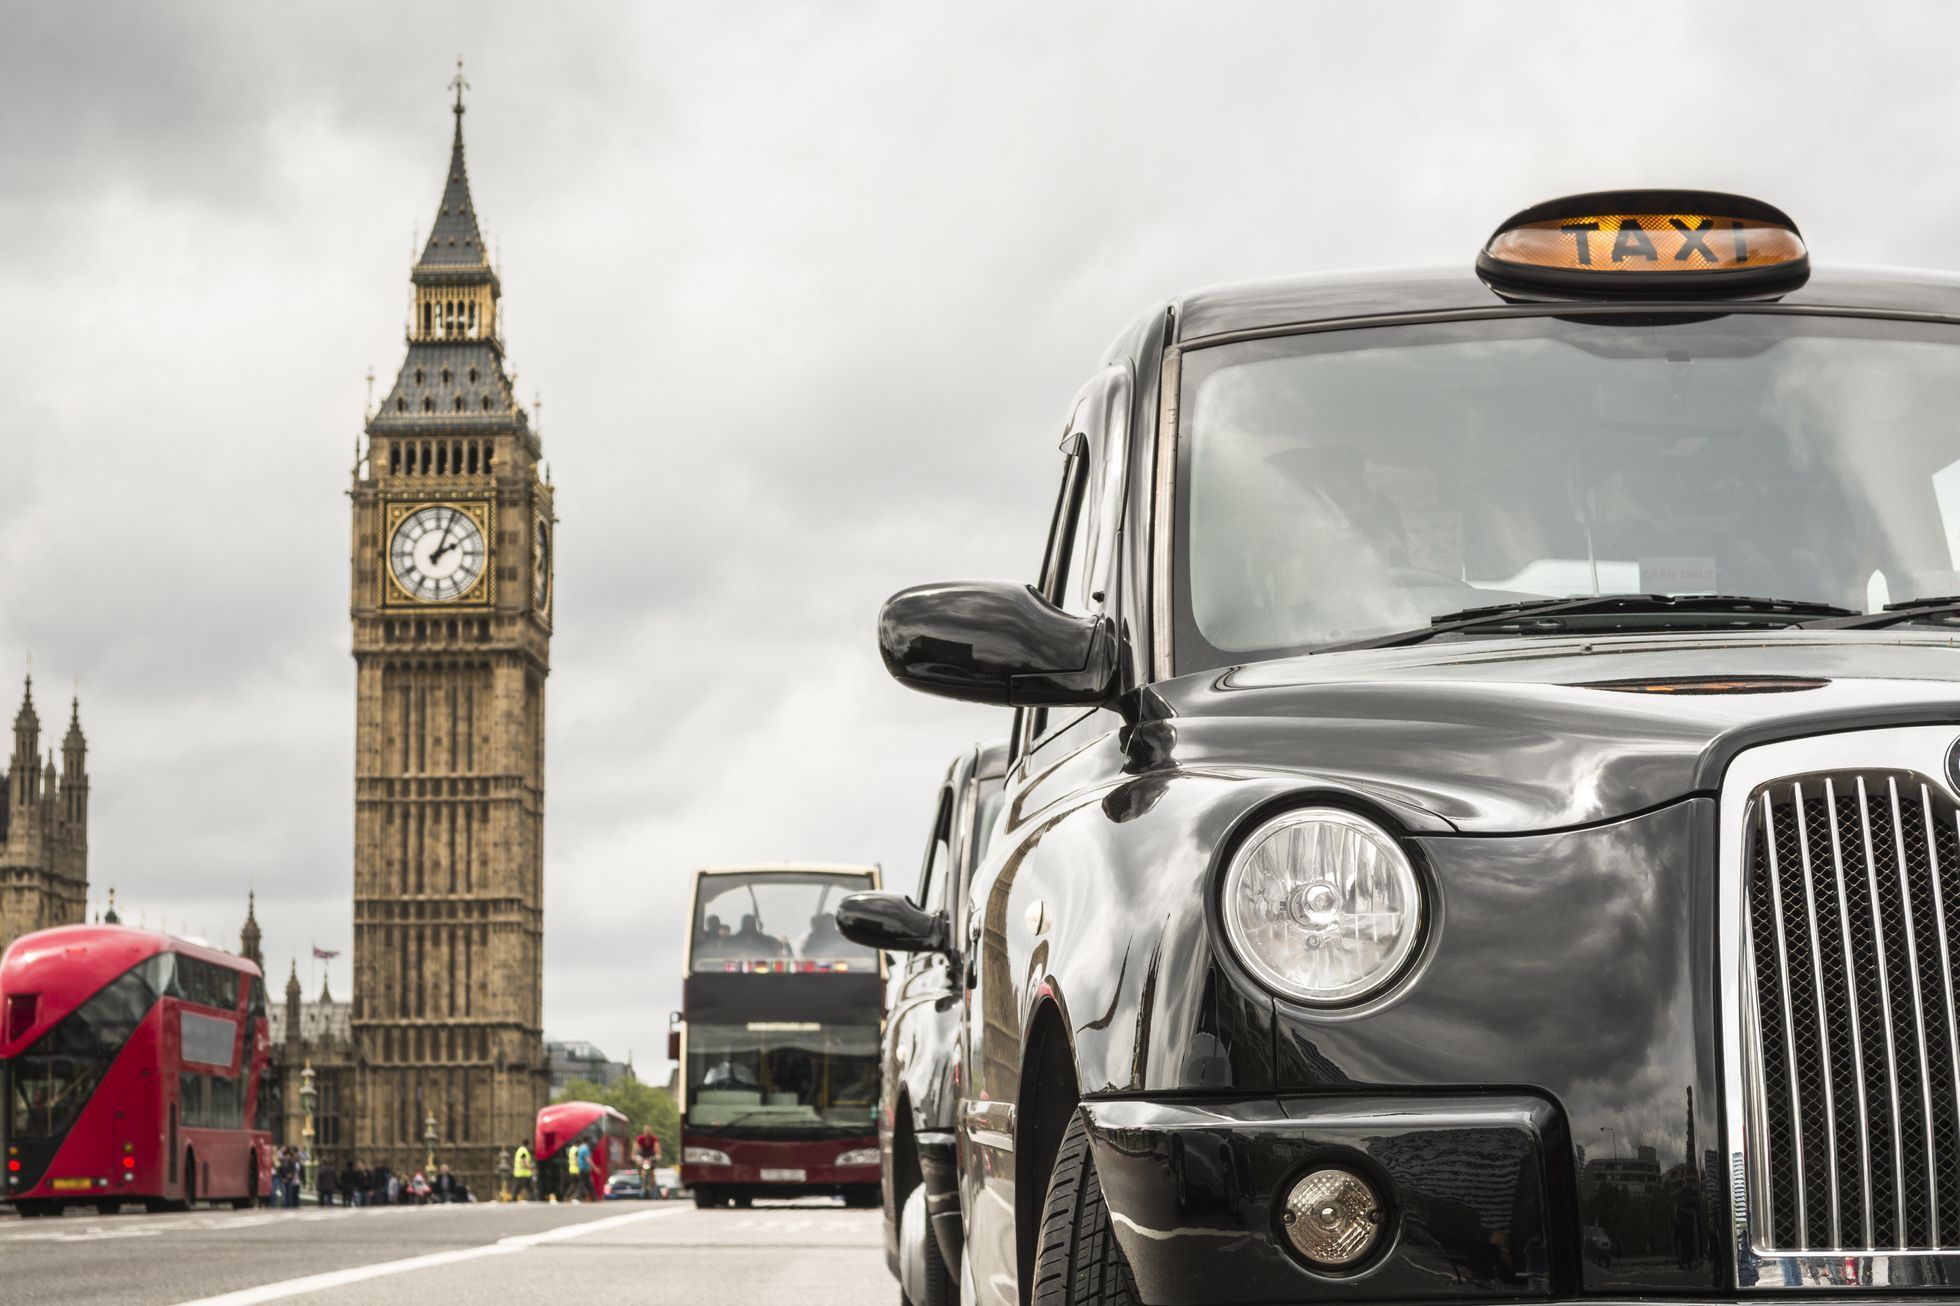 Ulice v Londýně, Británie, Anglie, taxi, Big Ben - ilustrační foto.